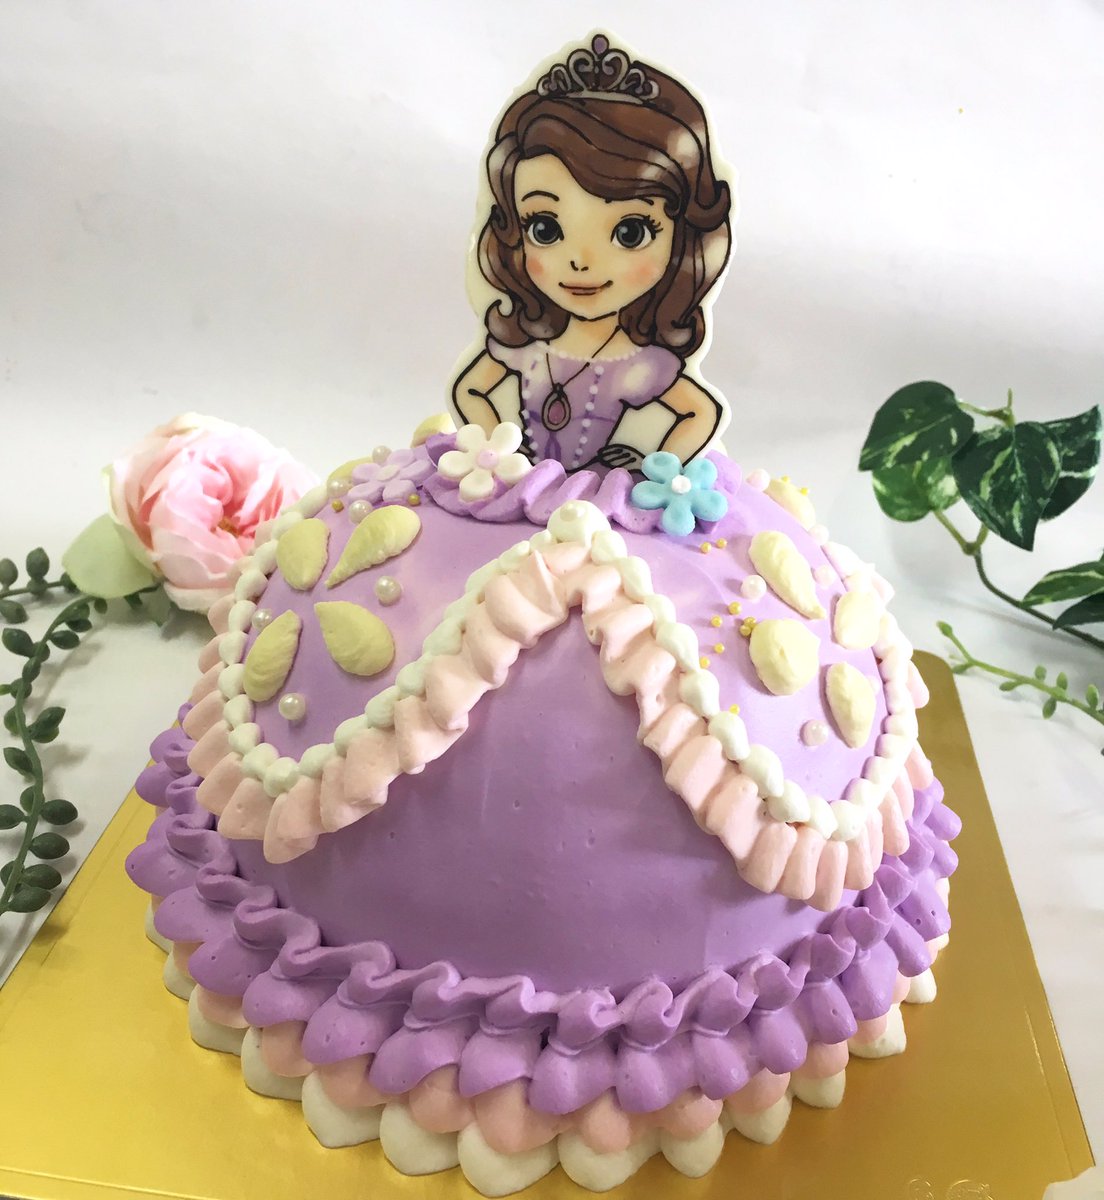 サン ヴェルジェ Pa Twitter ドールケーキ ラプンツェルとプリンセスソフィアのご予約が多いので紫のドレスばかり作っています 毎回デザインは思いつきですよー ありがとうございます サンヴェルジェ ドレスケーキ ドールケーキ キャラクター